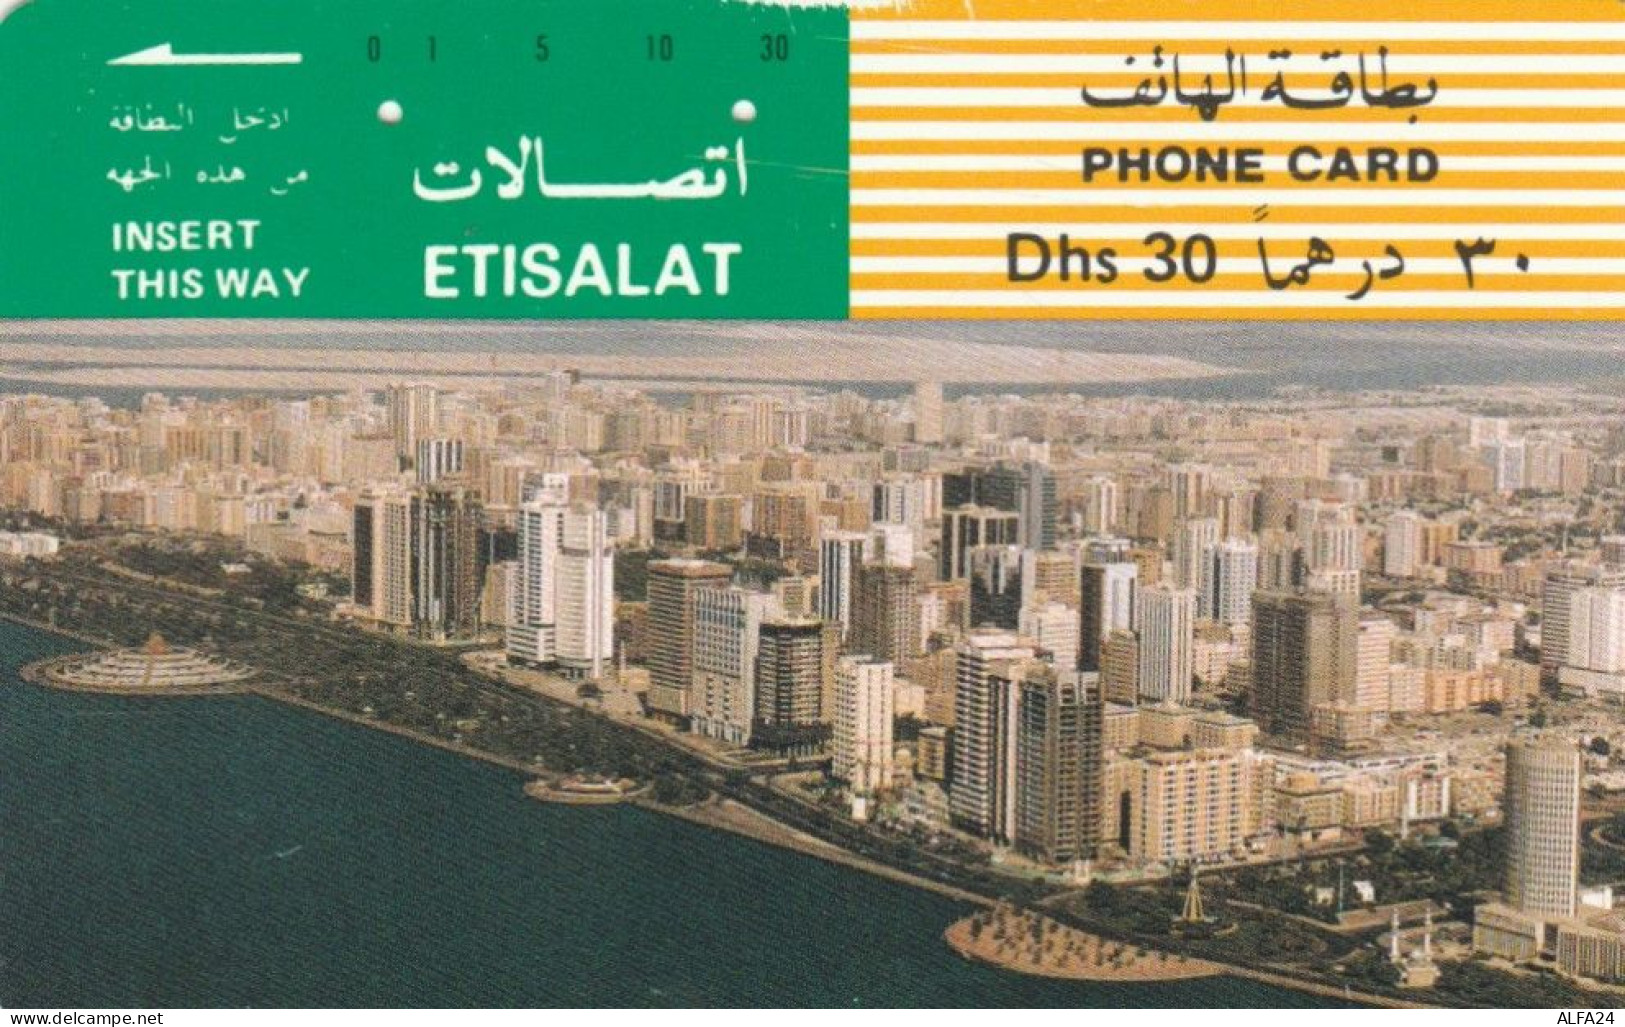 PHONE CARD EMIRATI ARABI  (E94.12.8 - Ver. Arab. Emirate